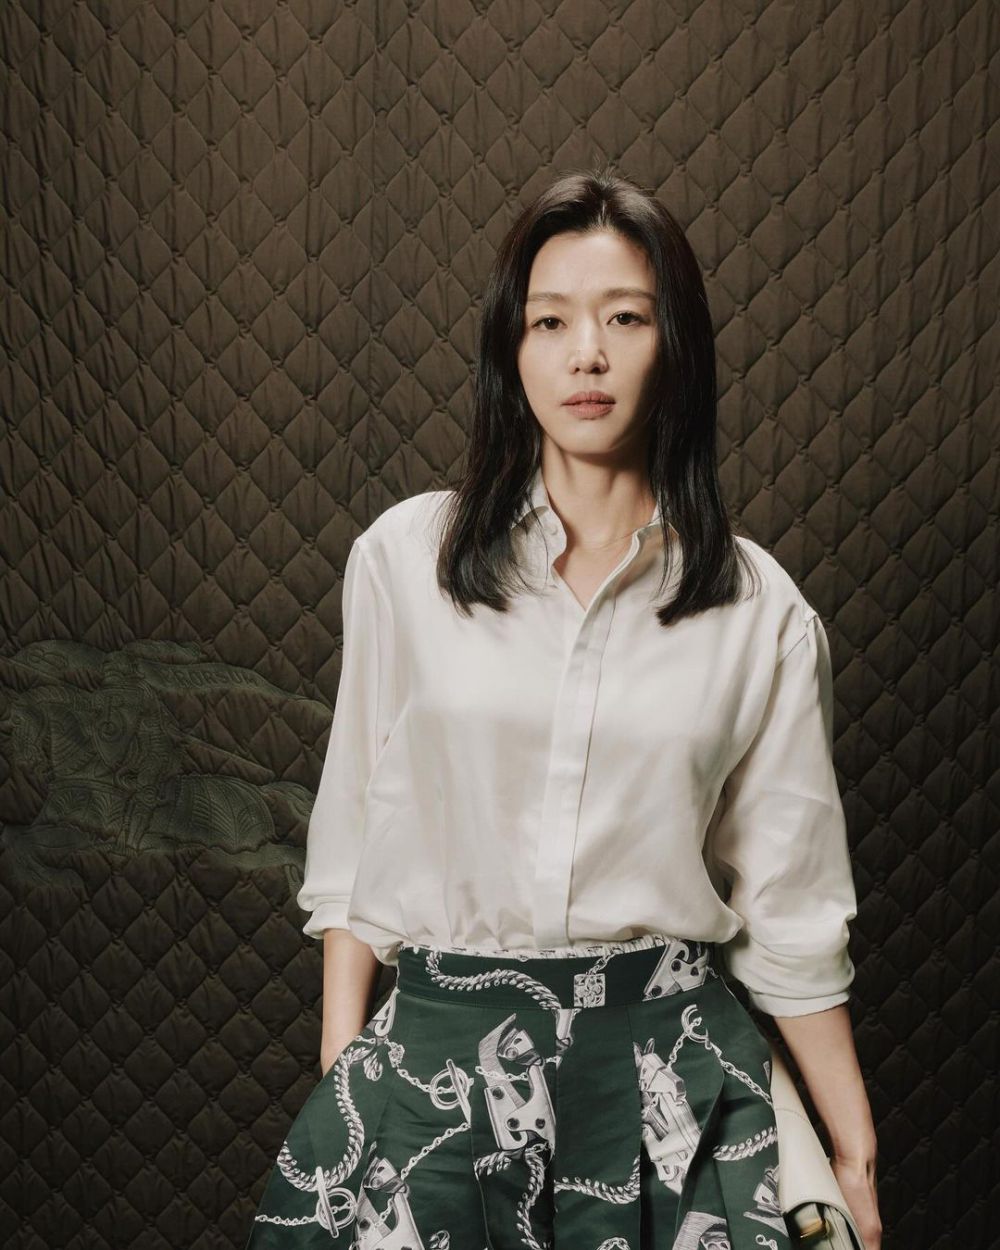 9 atores coreanos com a maior renda publicitária, há Kim Soo Hyun